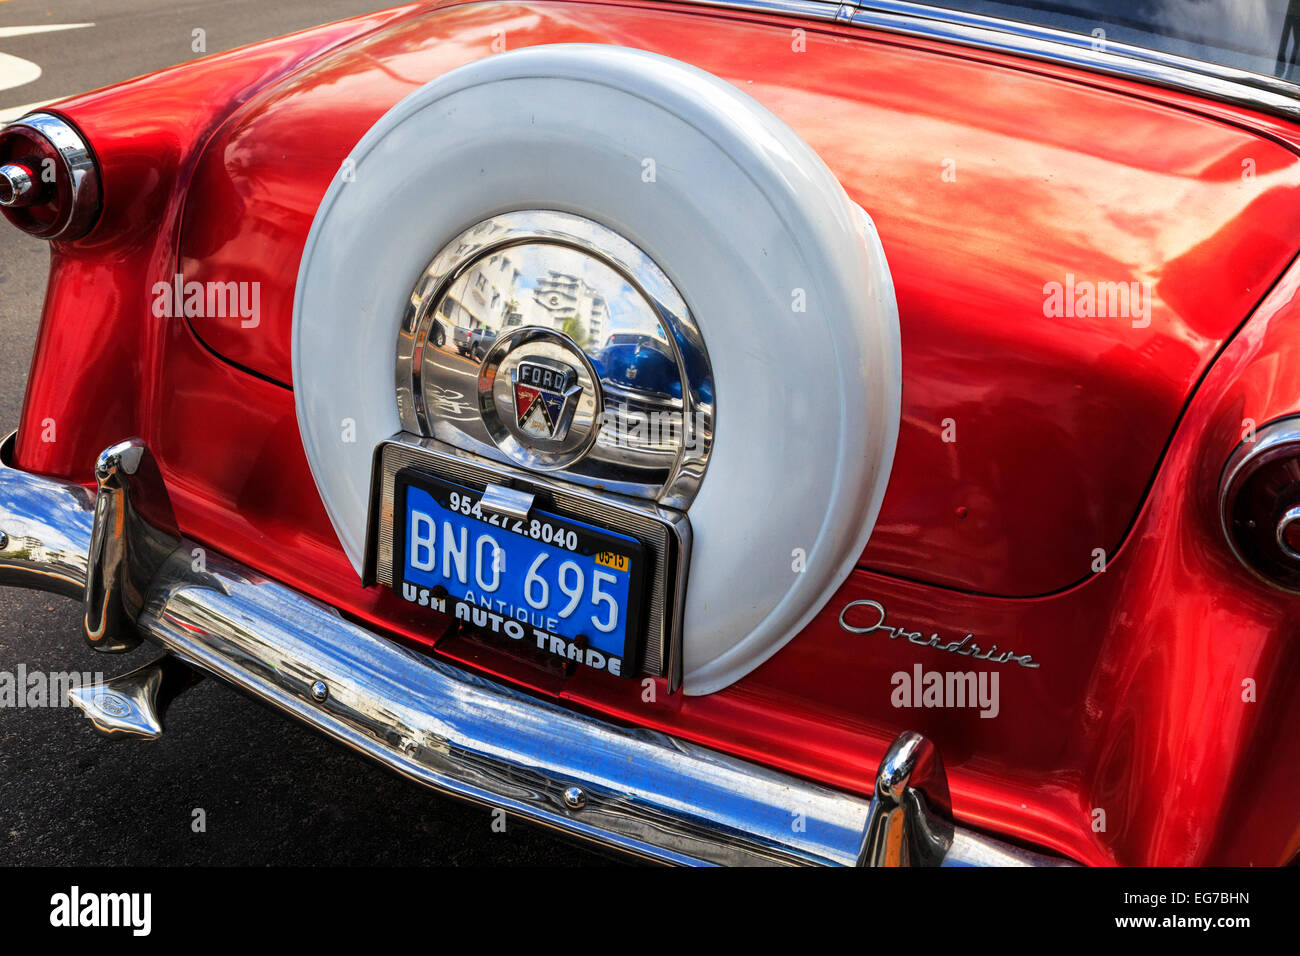 American Vintage automobile Ford garée à Miami avec la réflexion d'une autre voiture d'époque dans le chrome de la roue de secours Banque D'Images